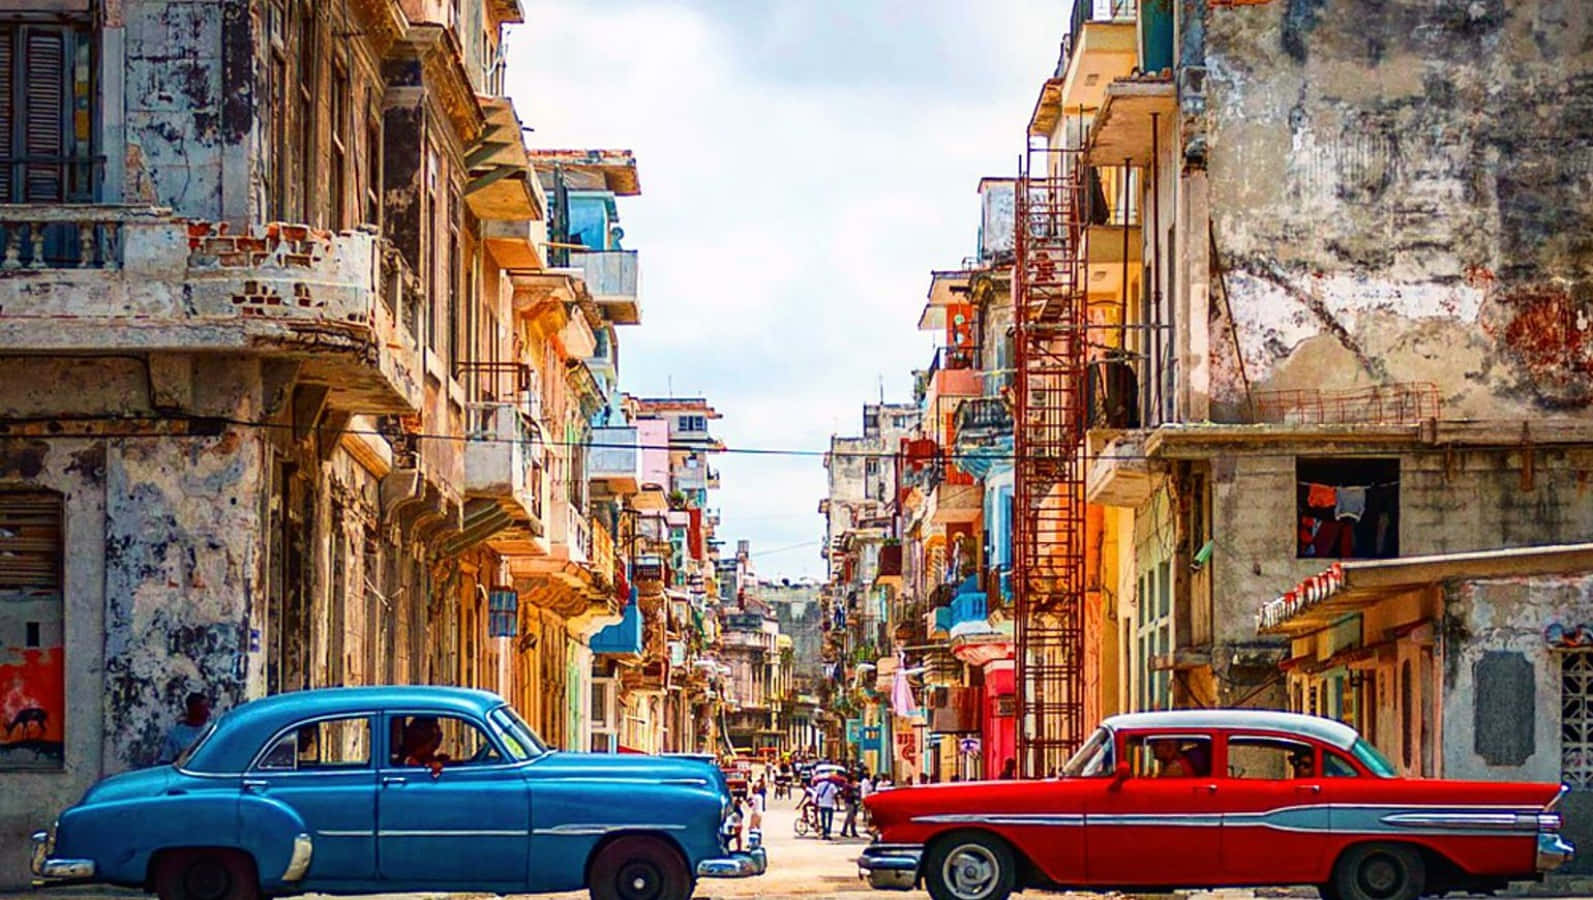 A Lively Streetside Scene in Old Havana, Cuba